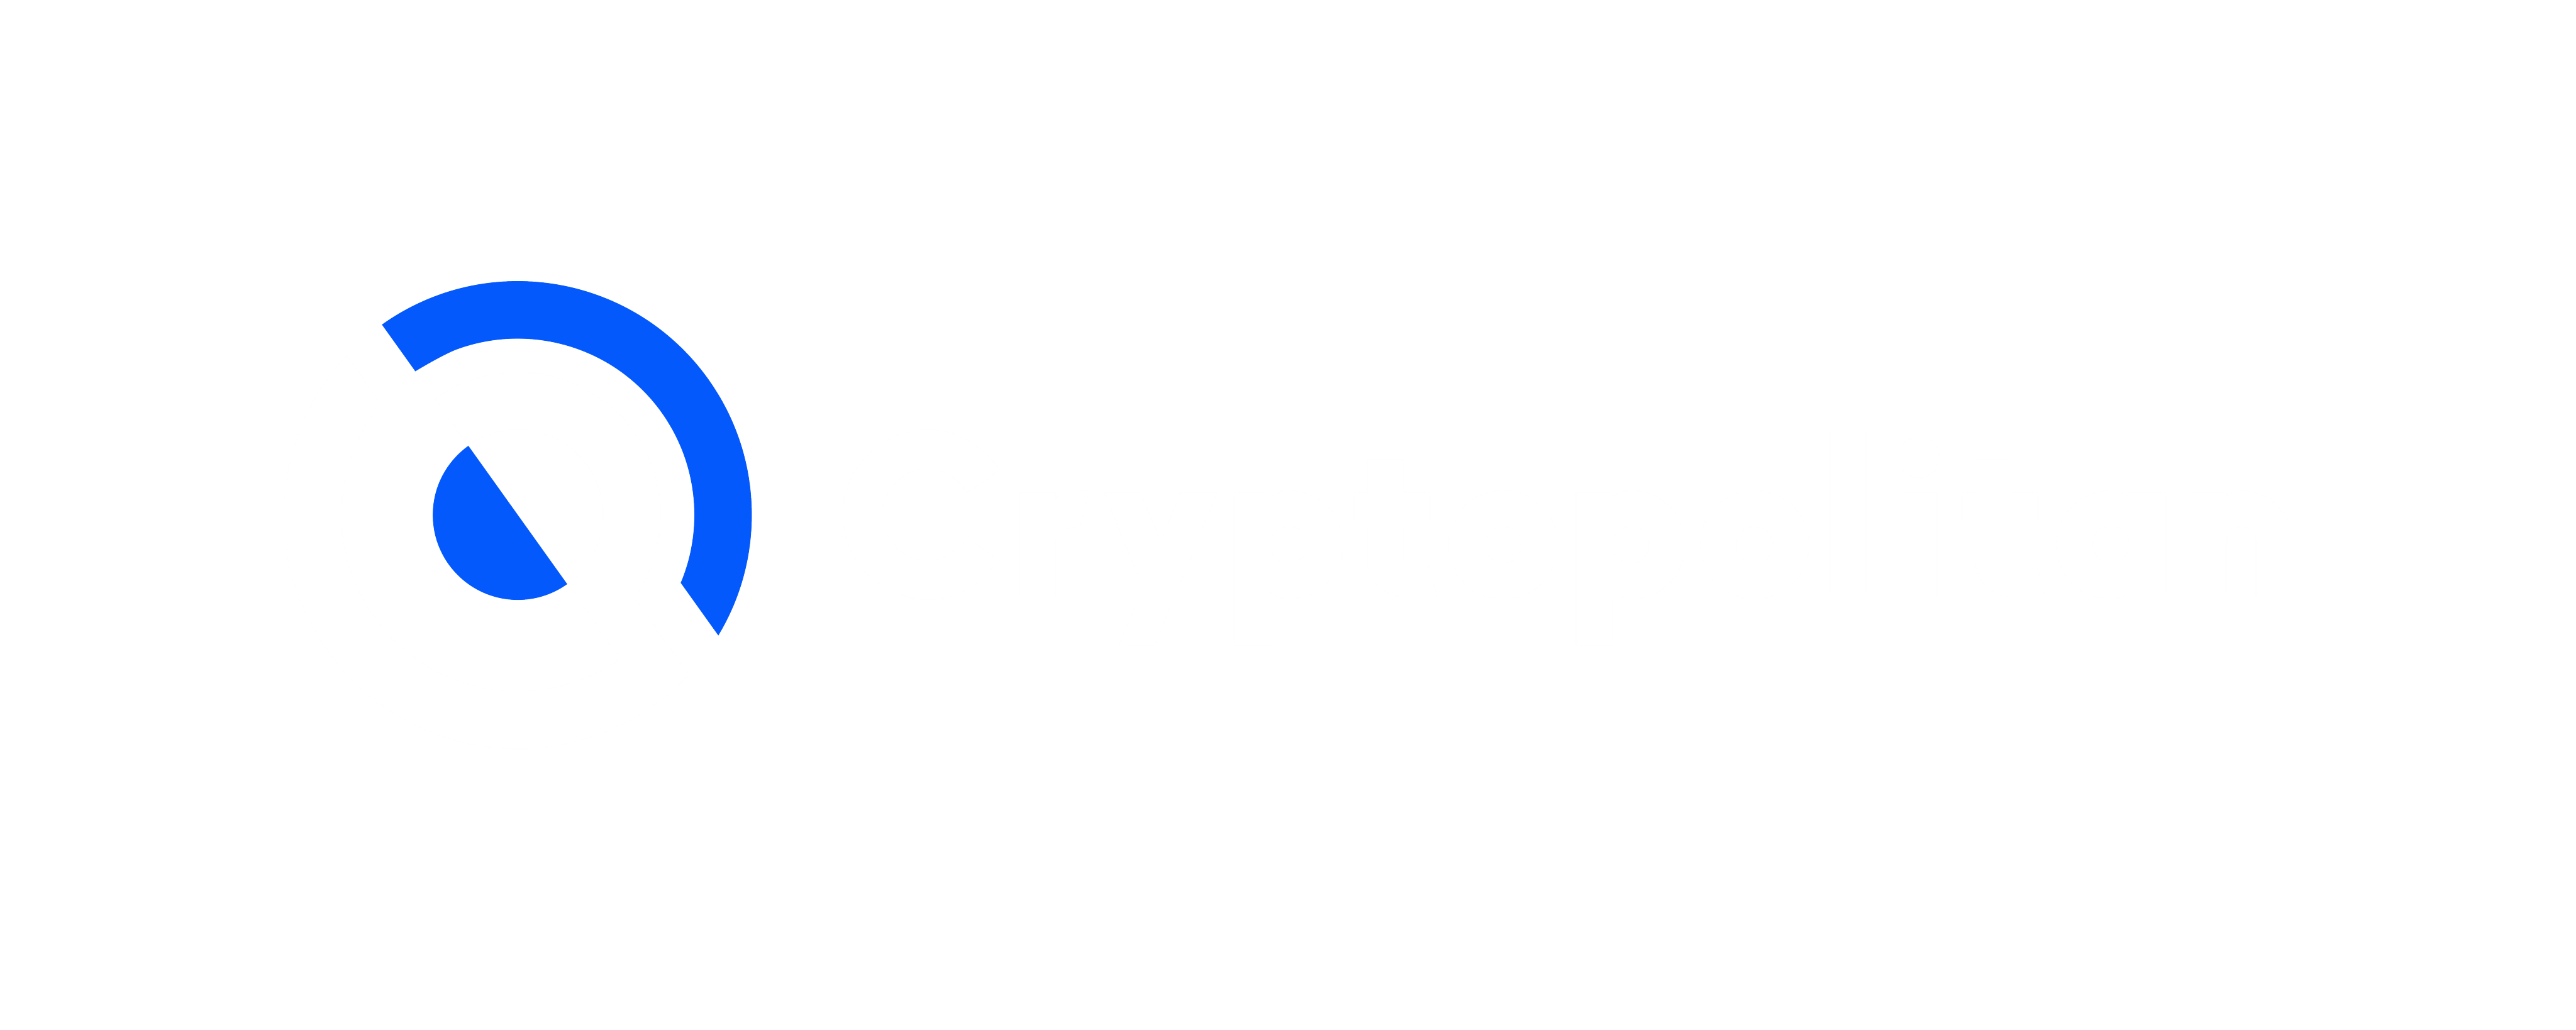 Copy of Cryptopolitan_logo-03